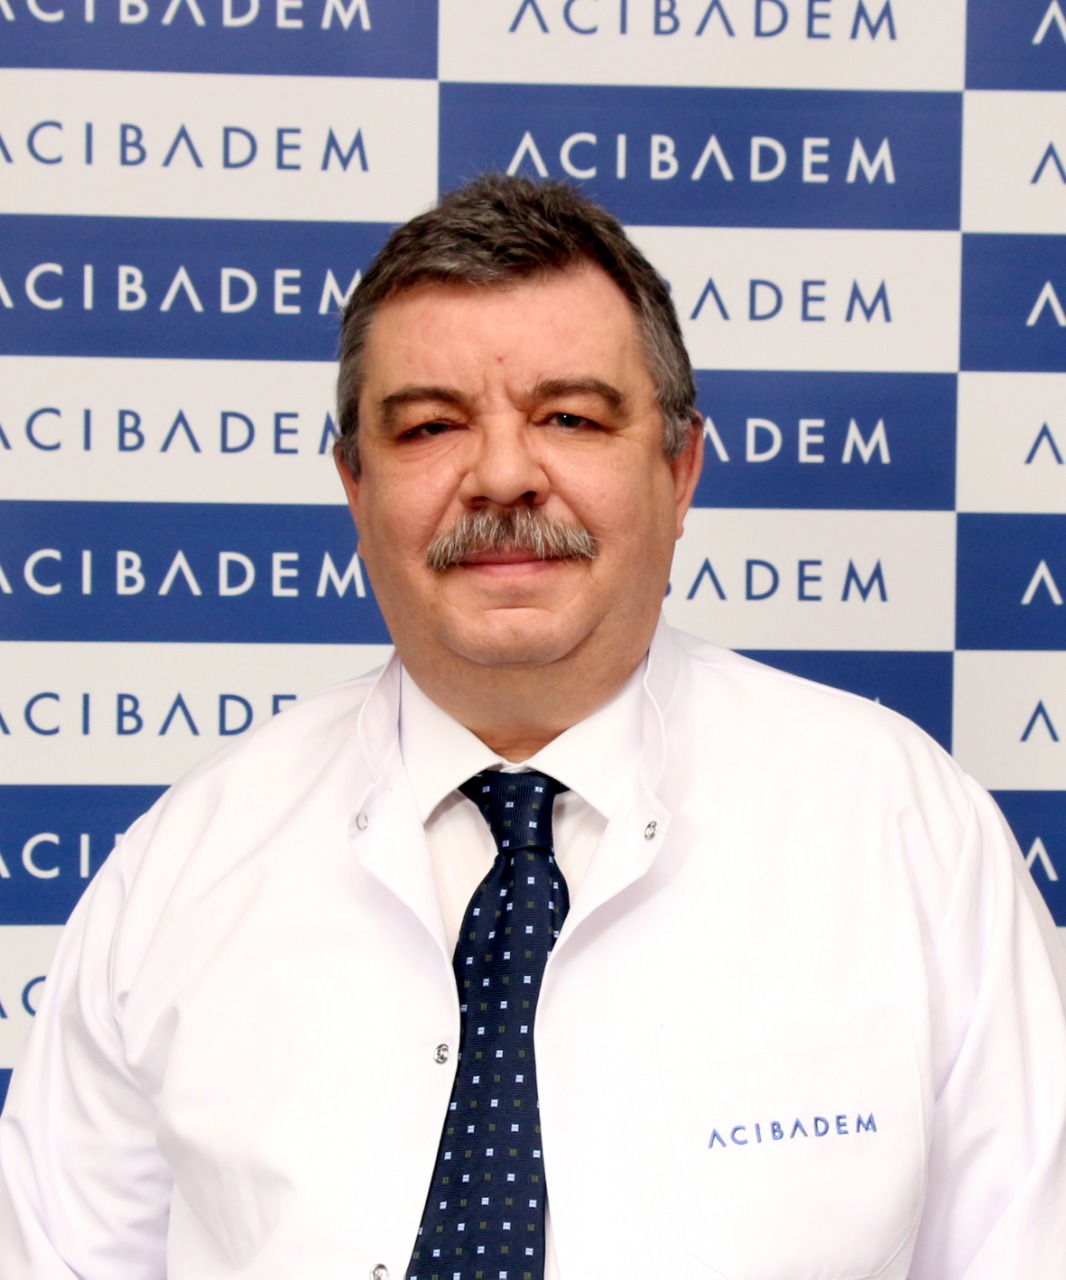 البروفيسور إركان فارداريلى-أخصائى الطب النووى لمستشفى أجيبادم بإسطنبول